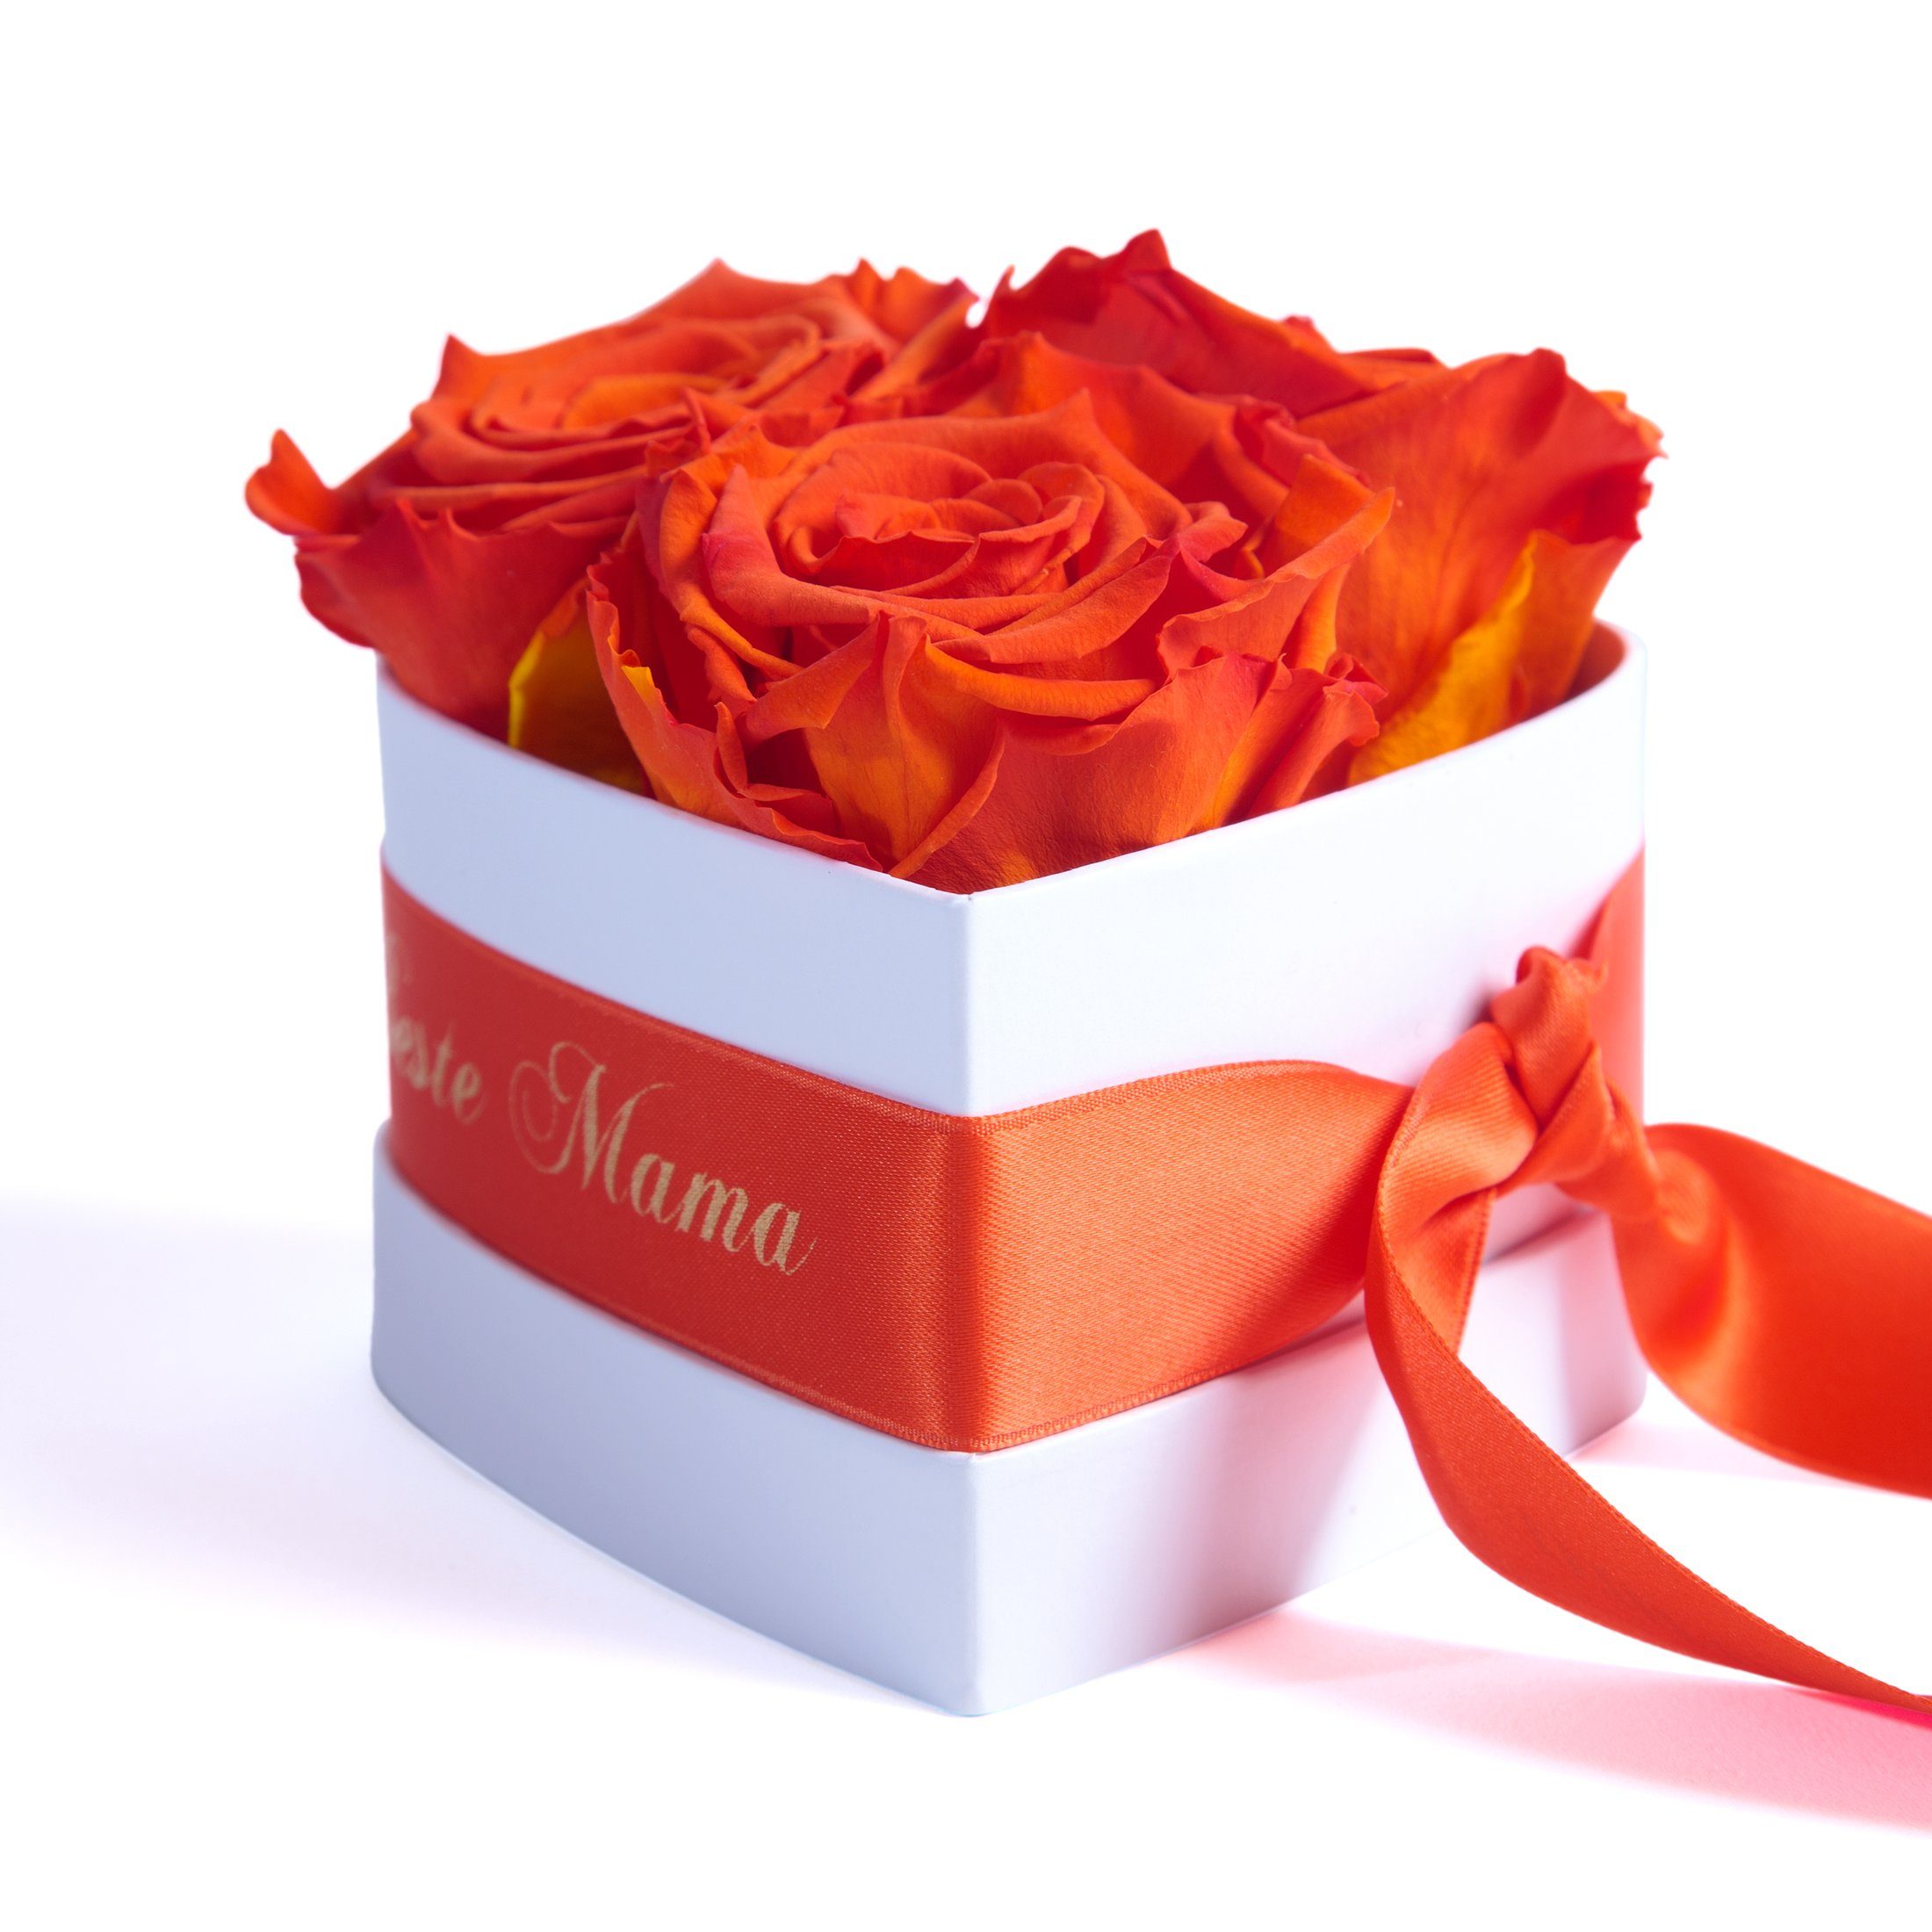 Rosenbox Kunstblume Jahre Beste Mama Orange haltbar die der Blumen echte 3 Rosen Infinity Heidelberg, 10 cm, Rose, Welt 3 SCHULZ für Herz ROSEMARIE Höhe Geschenk